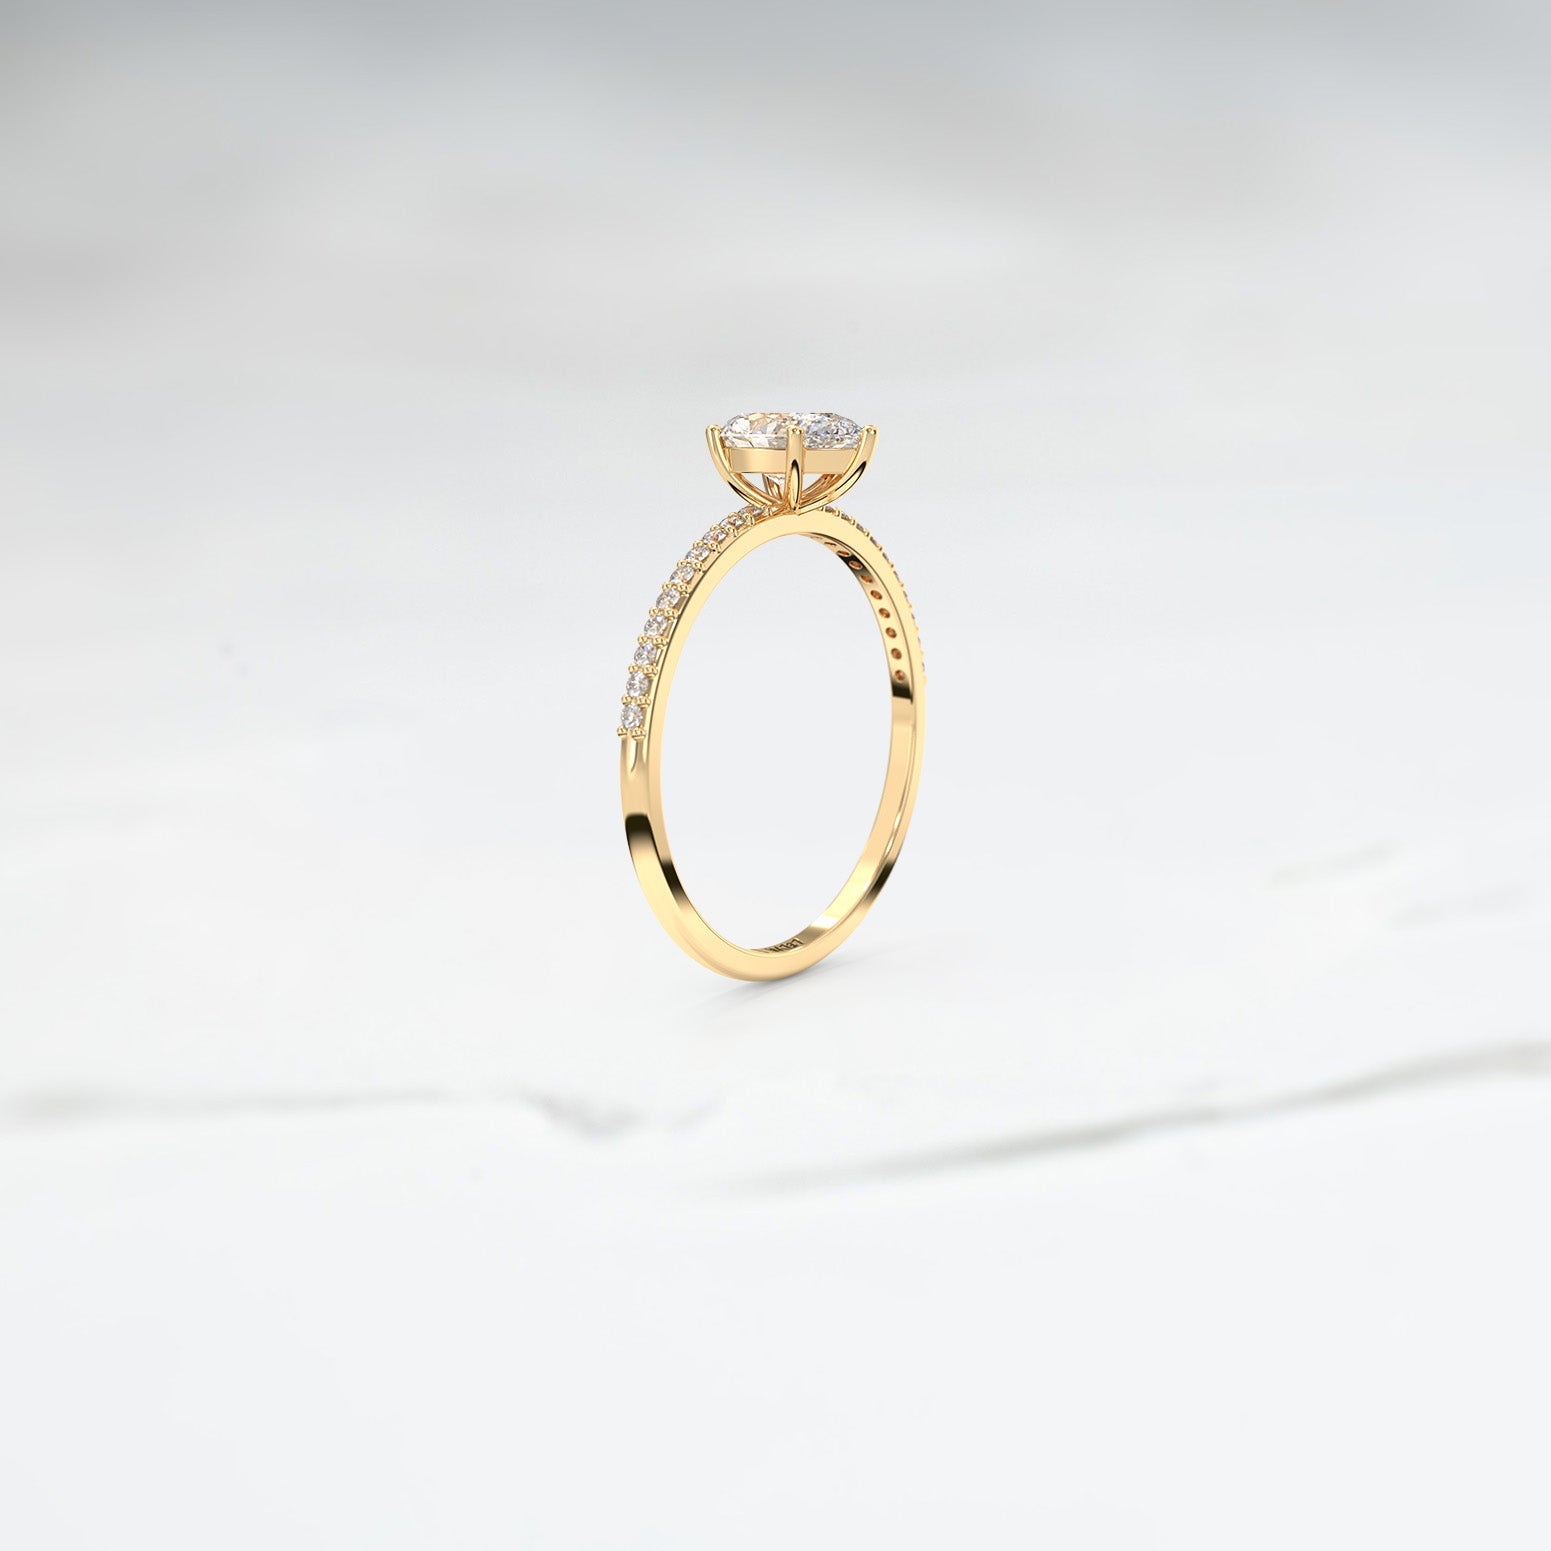 Customisable Frost Setting - Lelya - bespoke engagement and wedding rings made in Scotland, UK